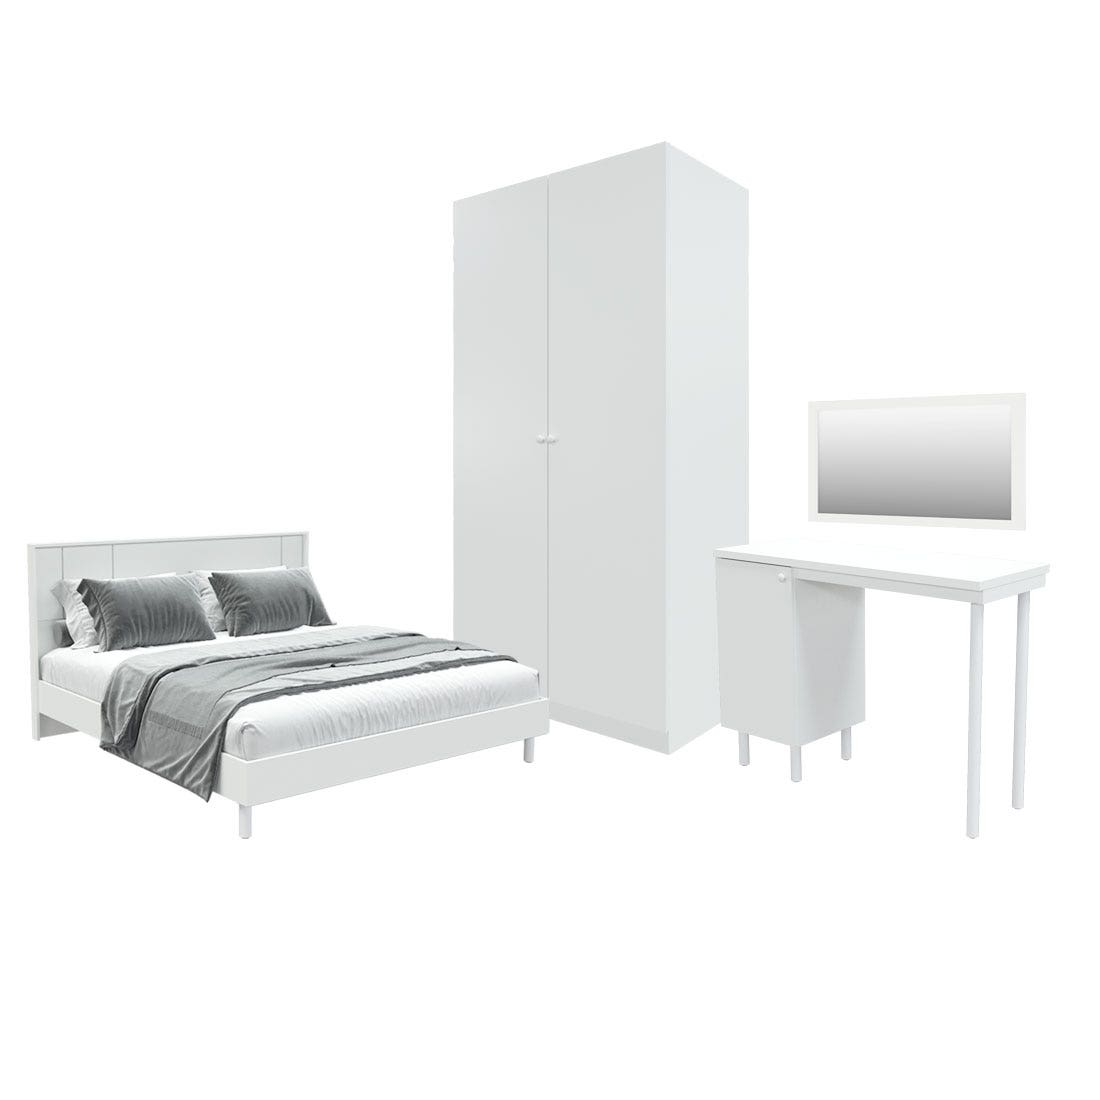 ชุดห้องนอน ขนาด 5 ฟุต รุ่น Pearliz ขาเหล็ก และ ตู้ Blox ขนาด 100 ซม. พร้อมโต๊ะทำงาน สีขาว มิดกรอส01